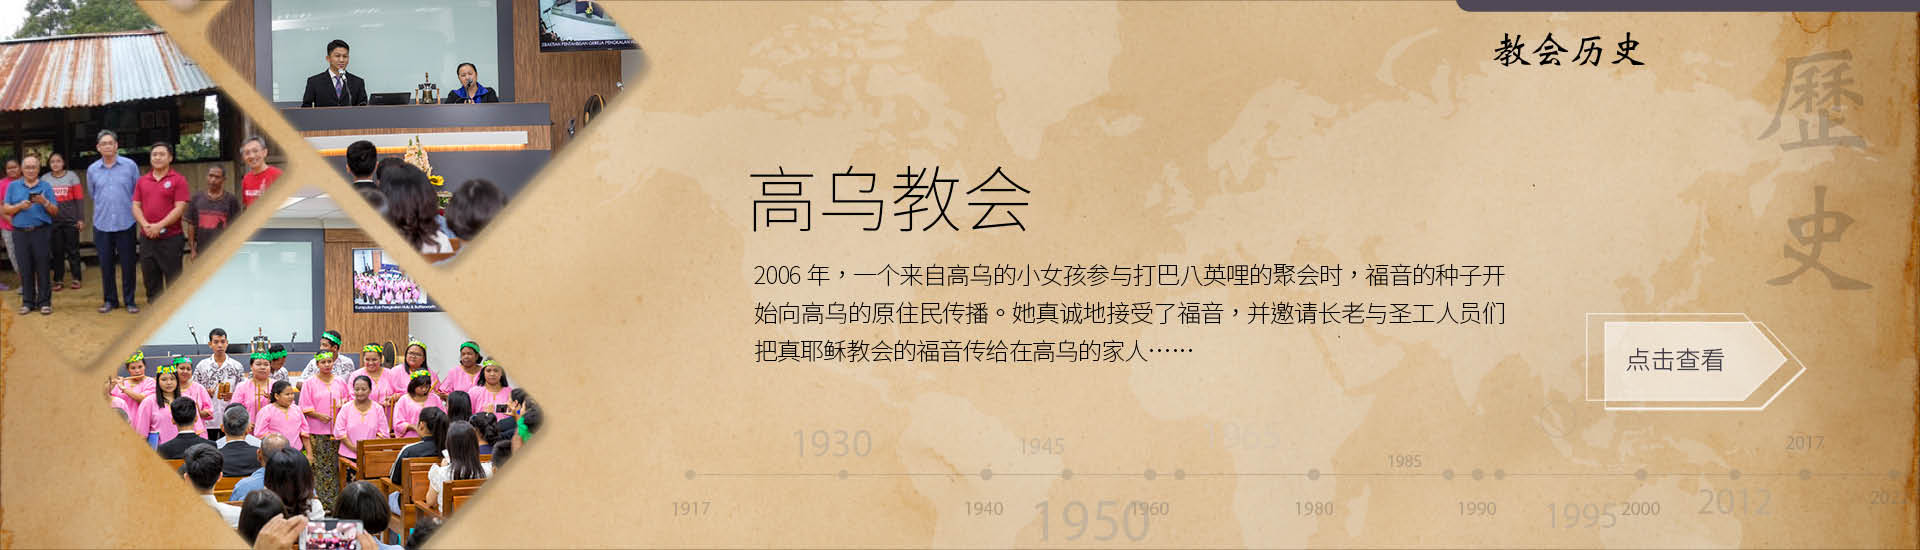 Banners_CN_History-PengkalanHulu